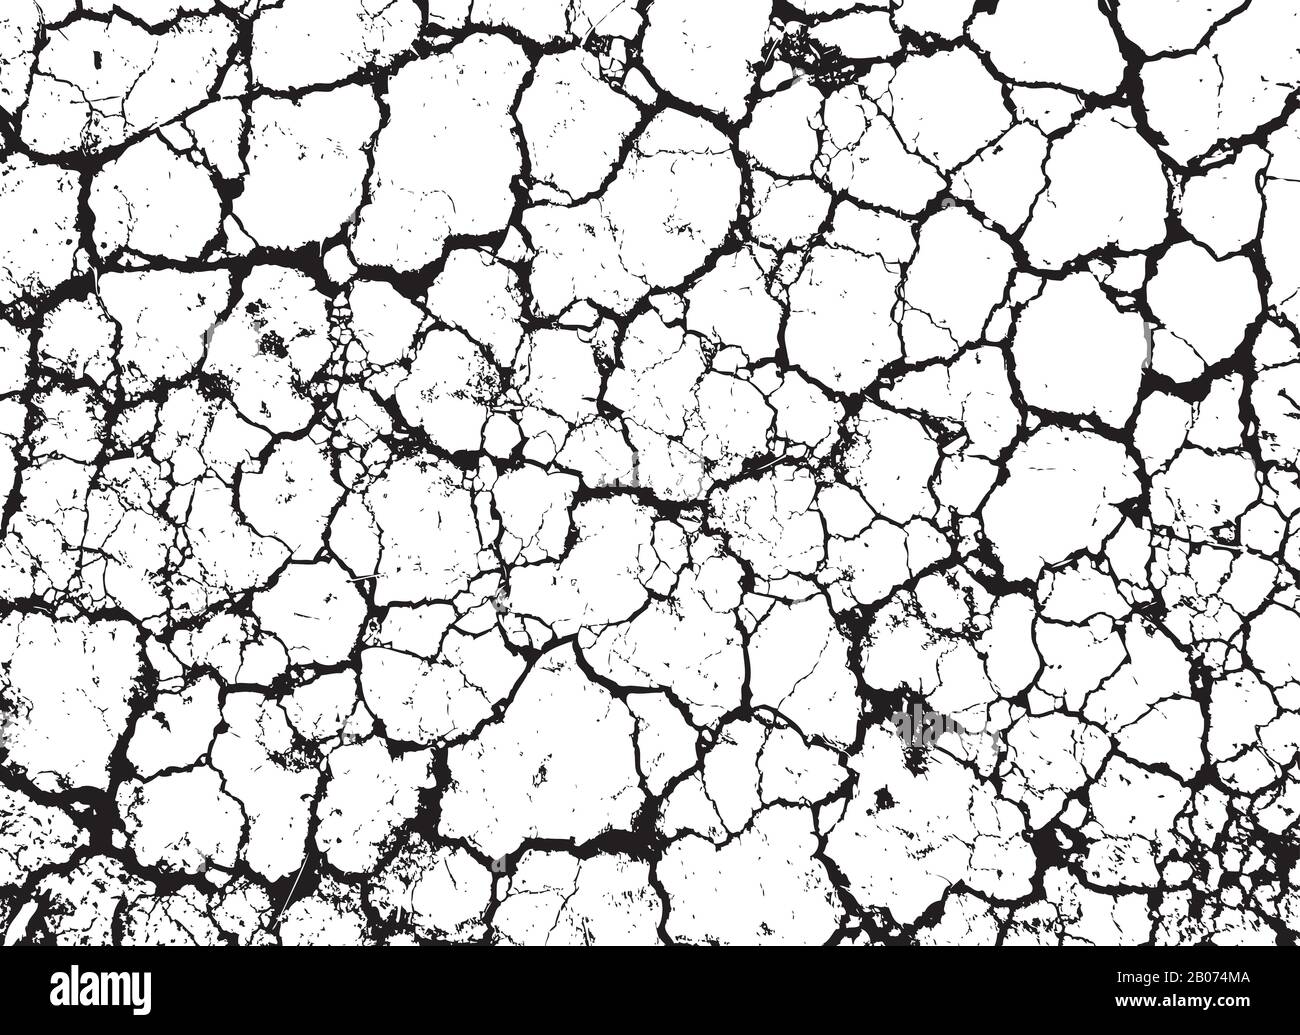 Grunge incrinato trama vettoriale di muro sporco o terra asciutta. Grungy pattern effetto immagine di sfondo Illustrazione Vettoriale